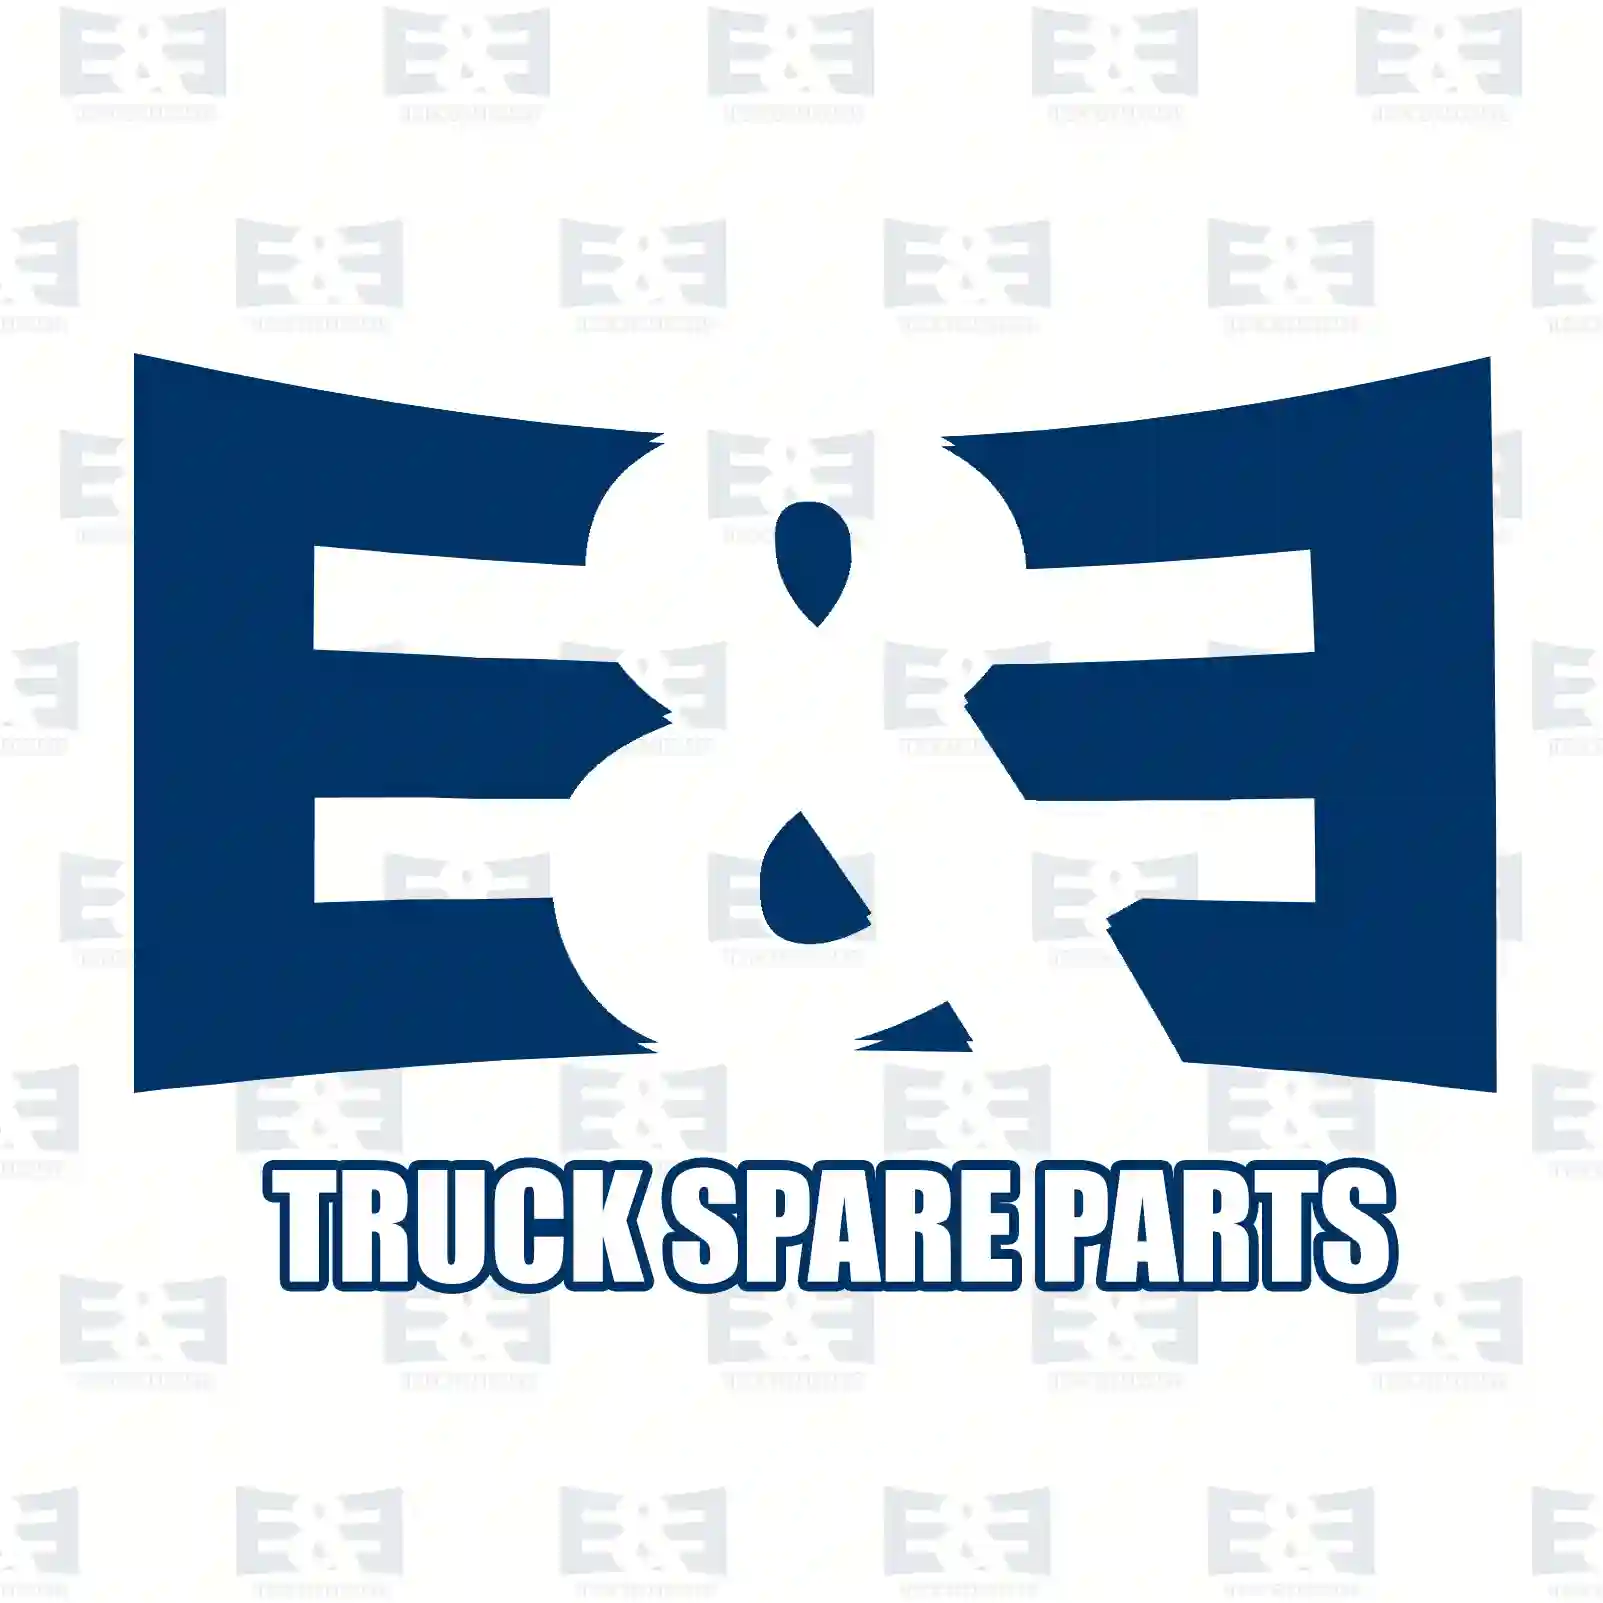 Insert, oil separator, 2E2208081, 5410100163, 5410100263, ZG01379-0008 ||  2E2208081 E&E Truck Spare Parts | Truck Spare Parts, Auotomotive Spare Parts Insert, oil separator, 2E2208081, 5410100163, 5410100263, ZG01379-0008 ||  2E2208081 E&E Truck Spare Parts | Truck Spare Parts, Auotomotive Spare Parts